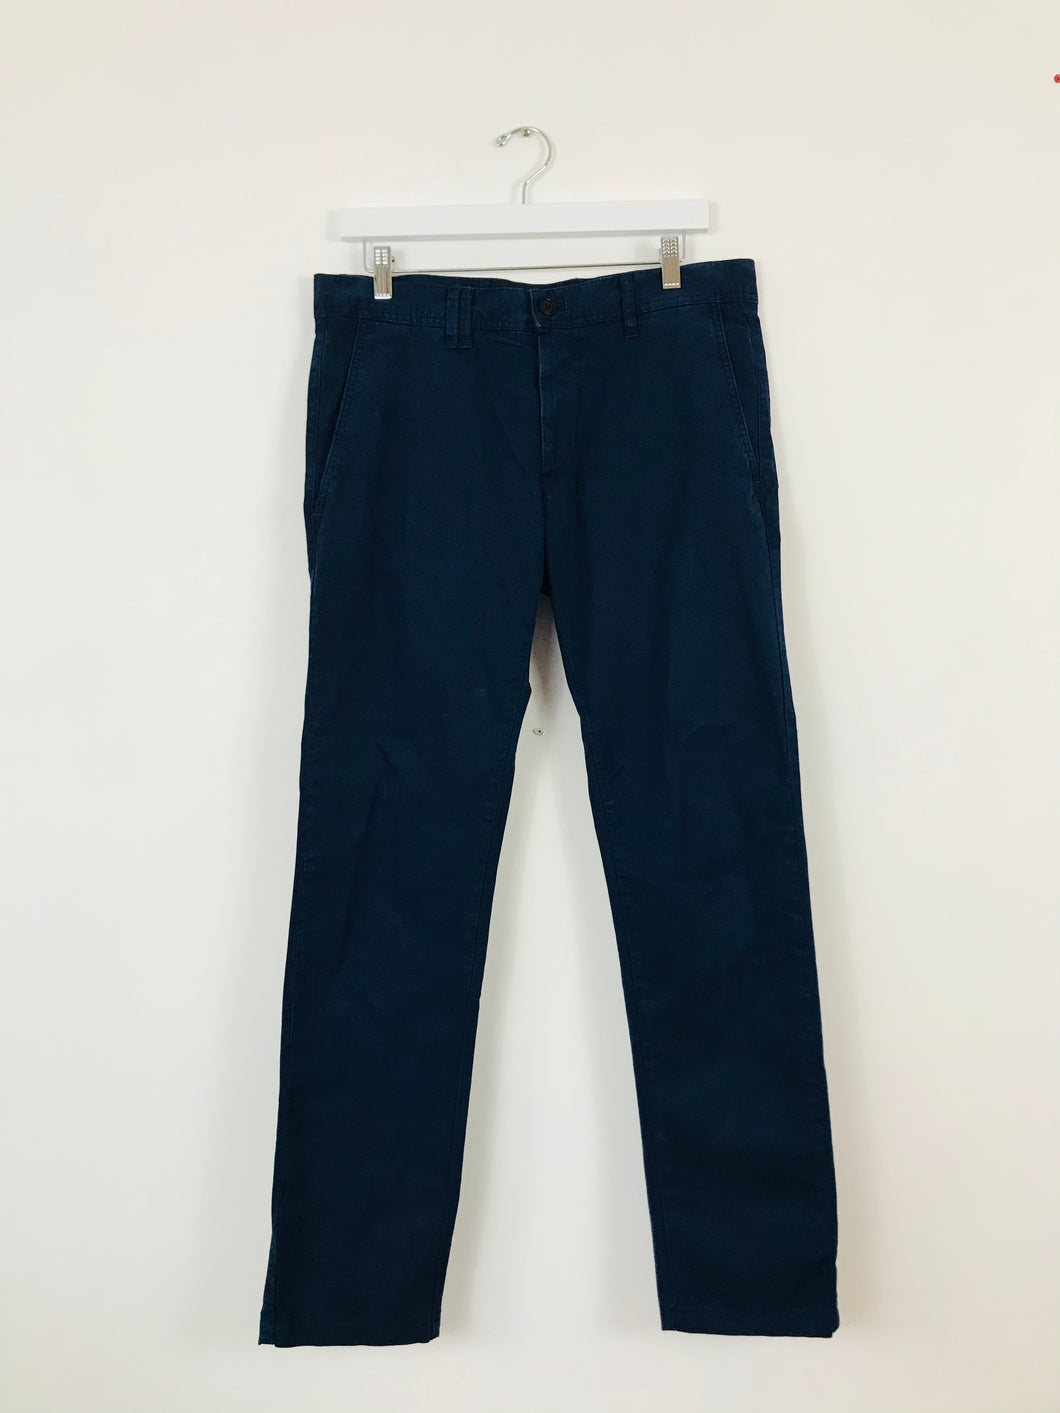 Zara Men’s Chino Straight Slim Fit Trousers | 42 UK32 | Blue